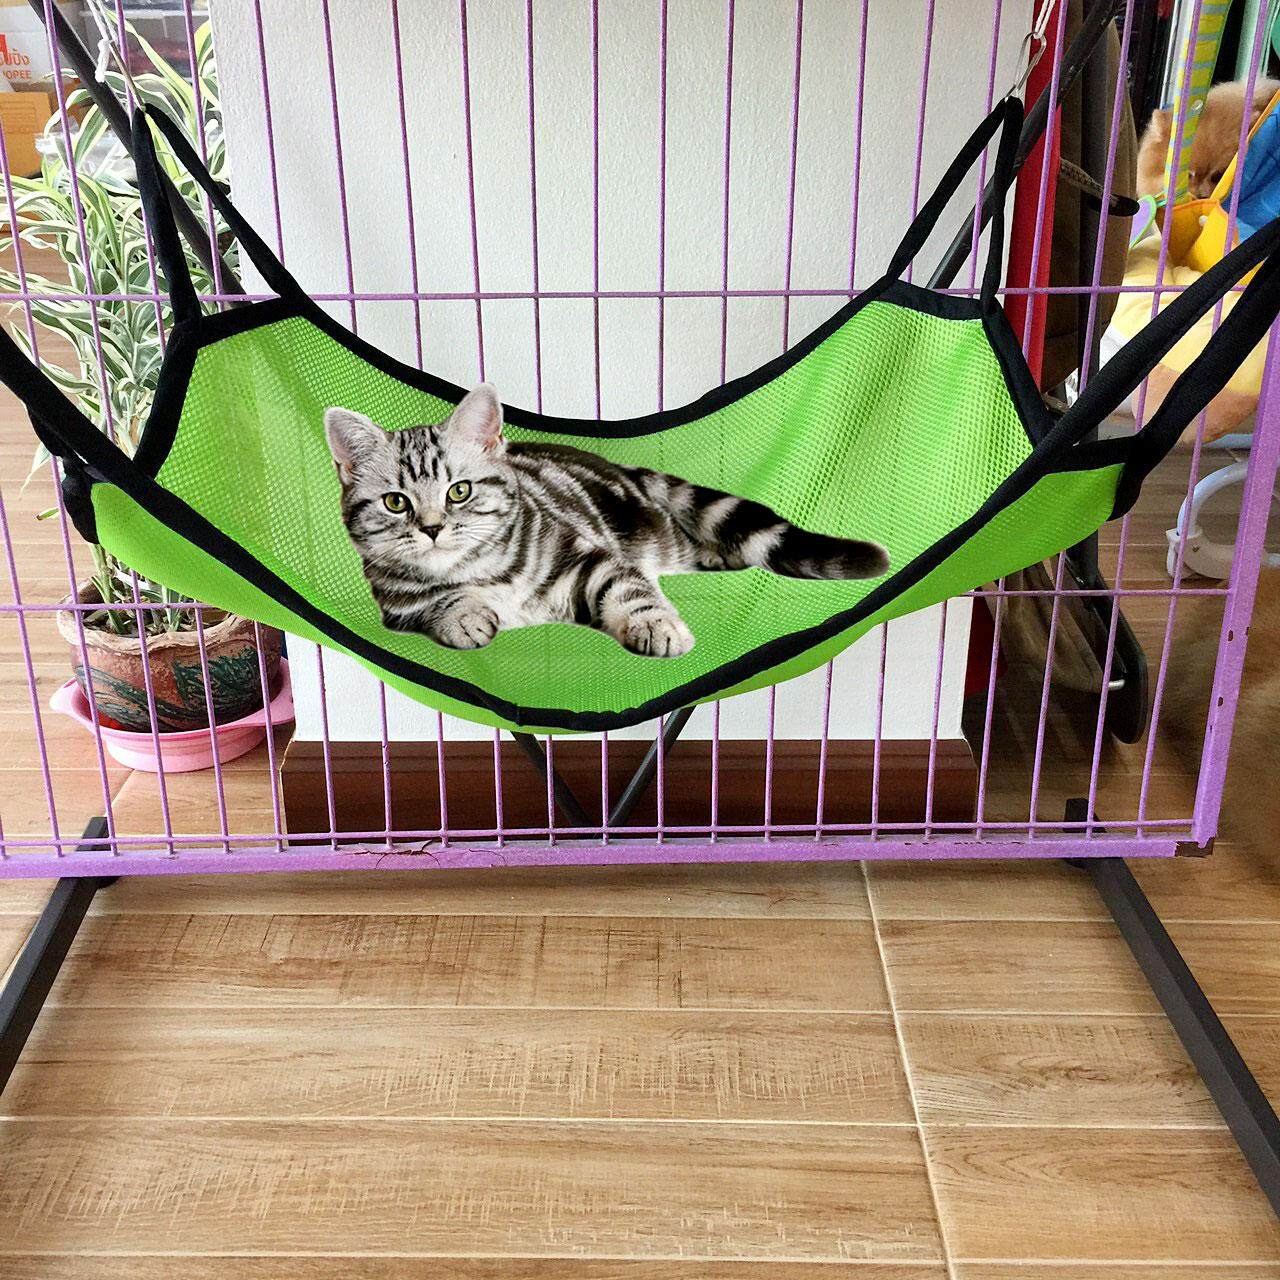 เปลแมว สำหรับแขวนไว้ในกรง นอนสบาย ระบายอากาศได้ดี(สีเขียว)